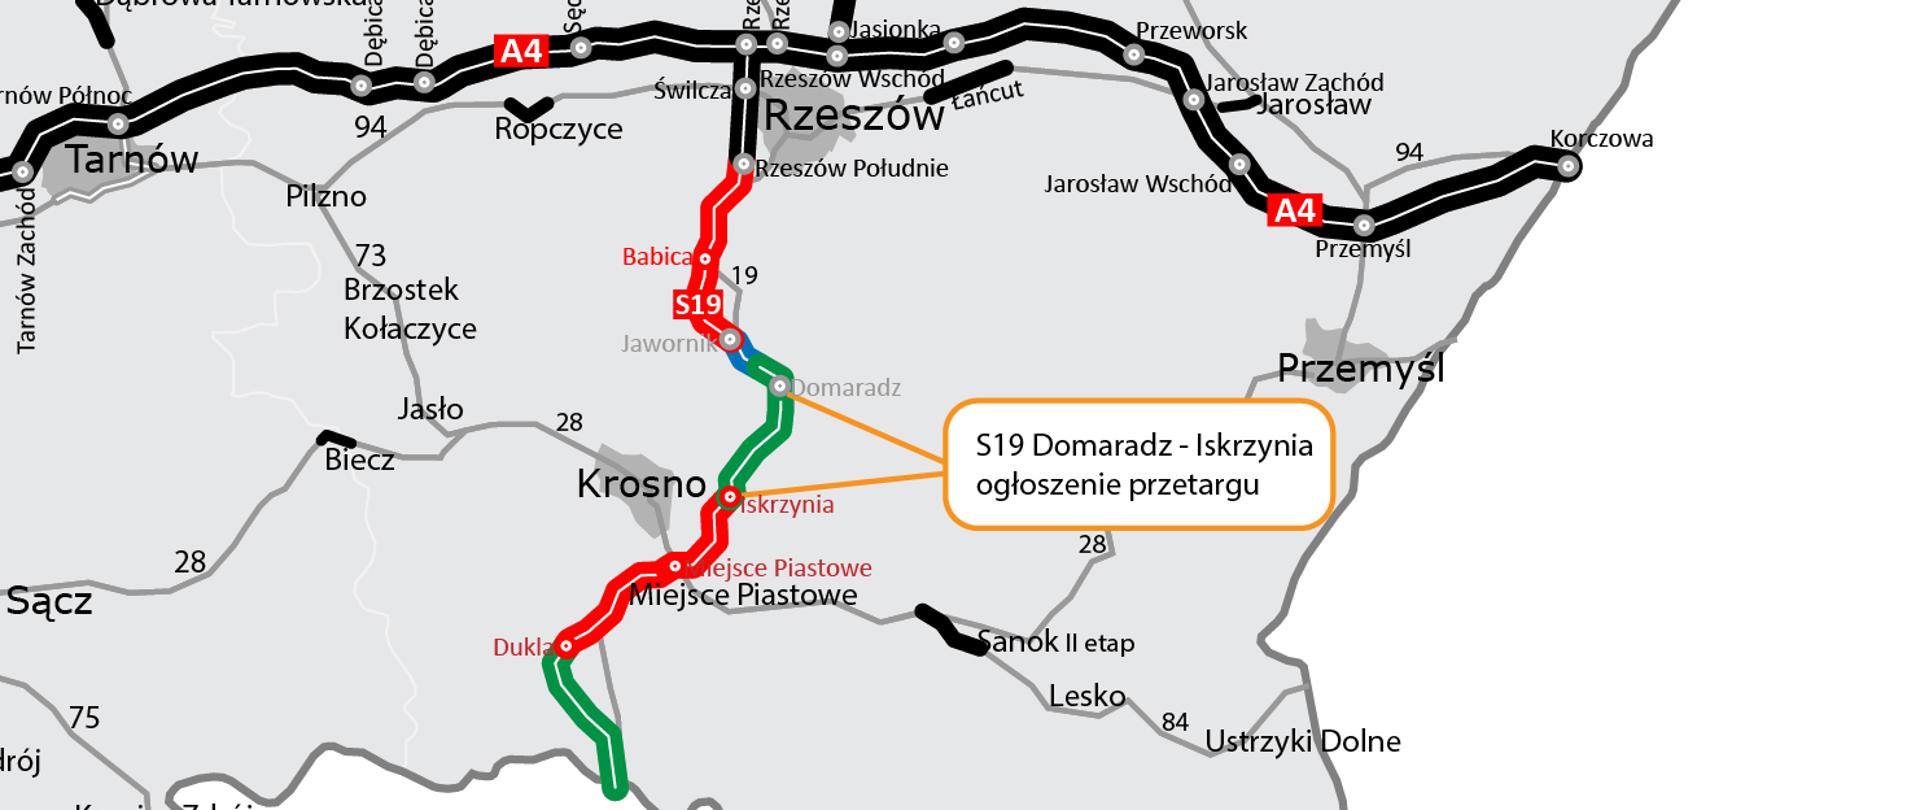 Mapa woj. podkarpackiego z zaznaczonymi odcinkami dróg krajowych i odc. S19 Domaradz - Iskrzynia na który ogłoszony został przetarg